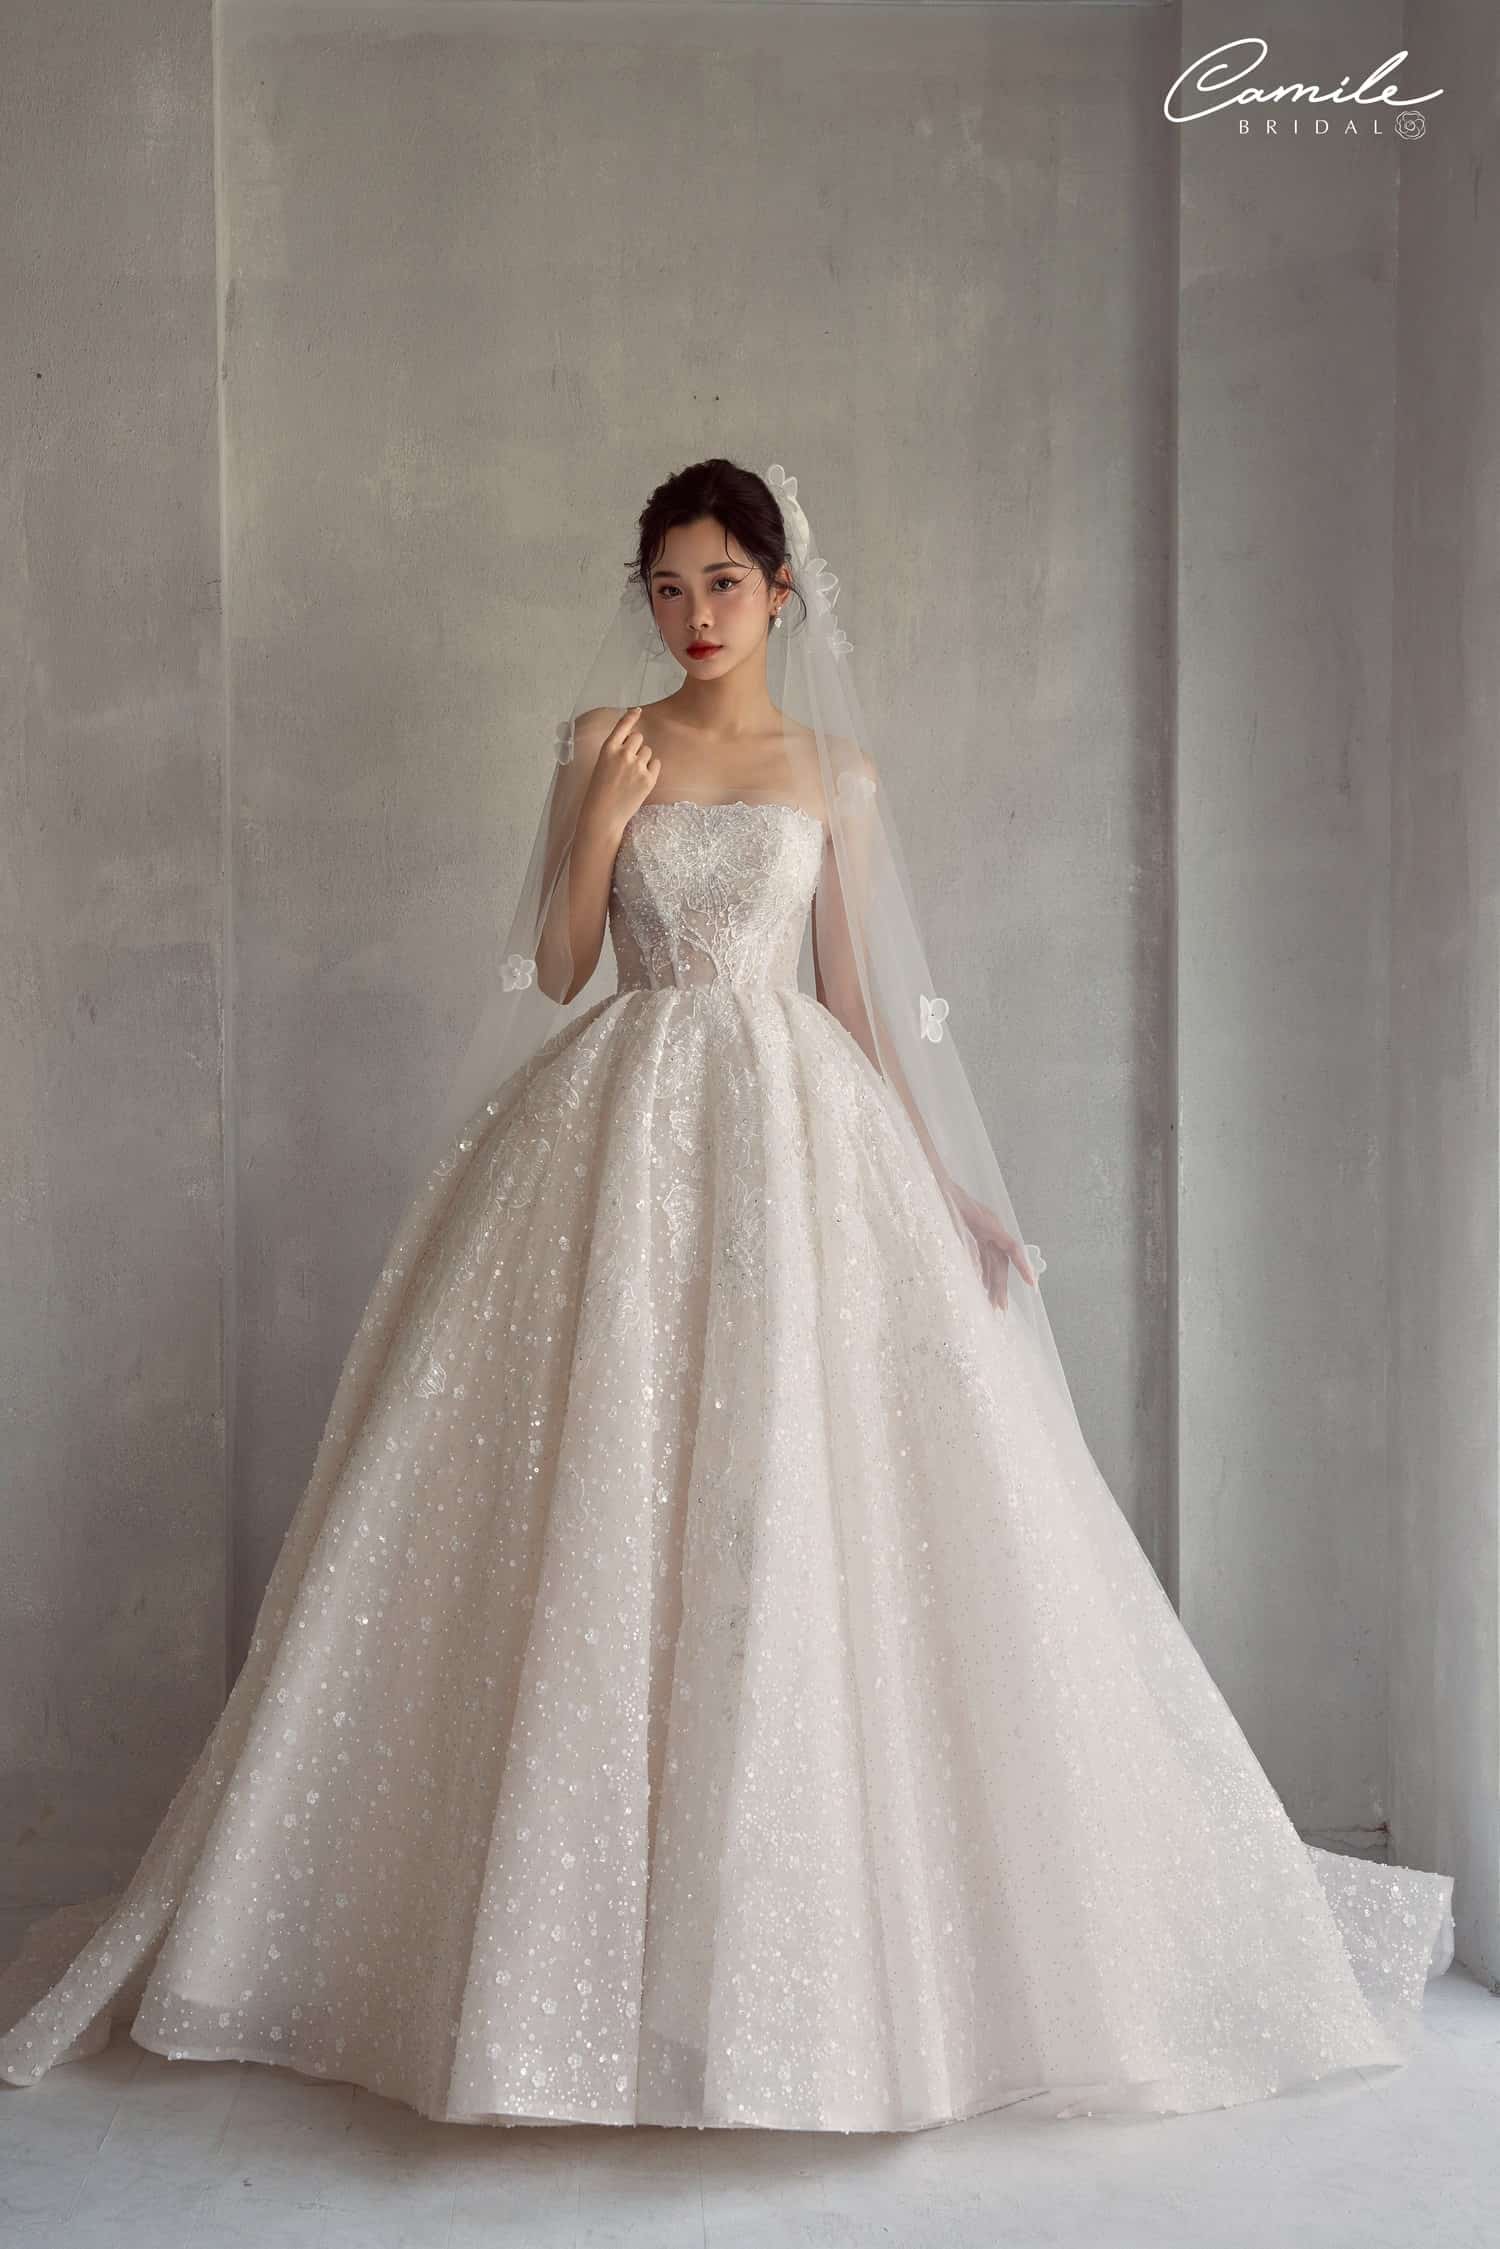 Mức giá để nàng có thể sở hữu chiếc váy cưới cao cấp là bao nhiêu?